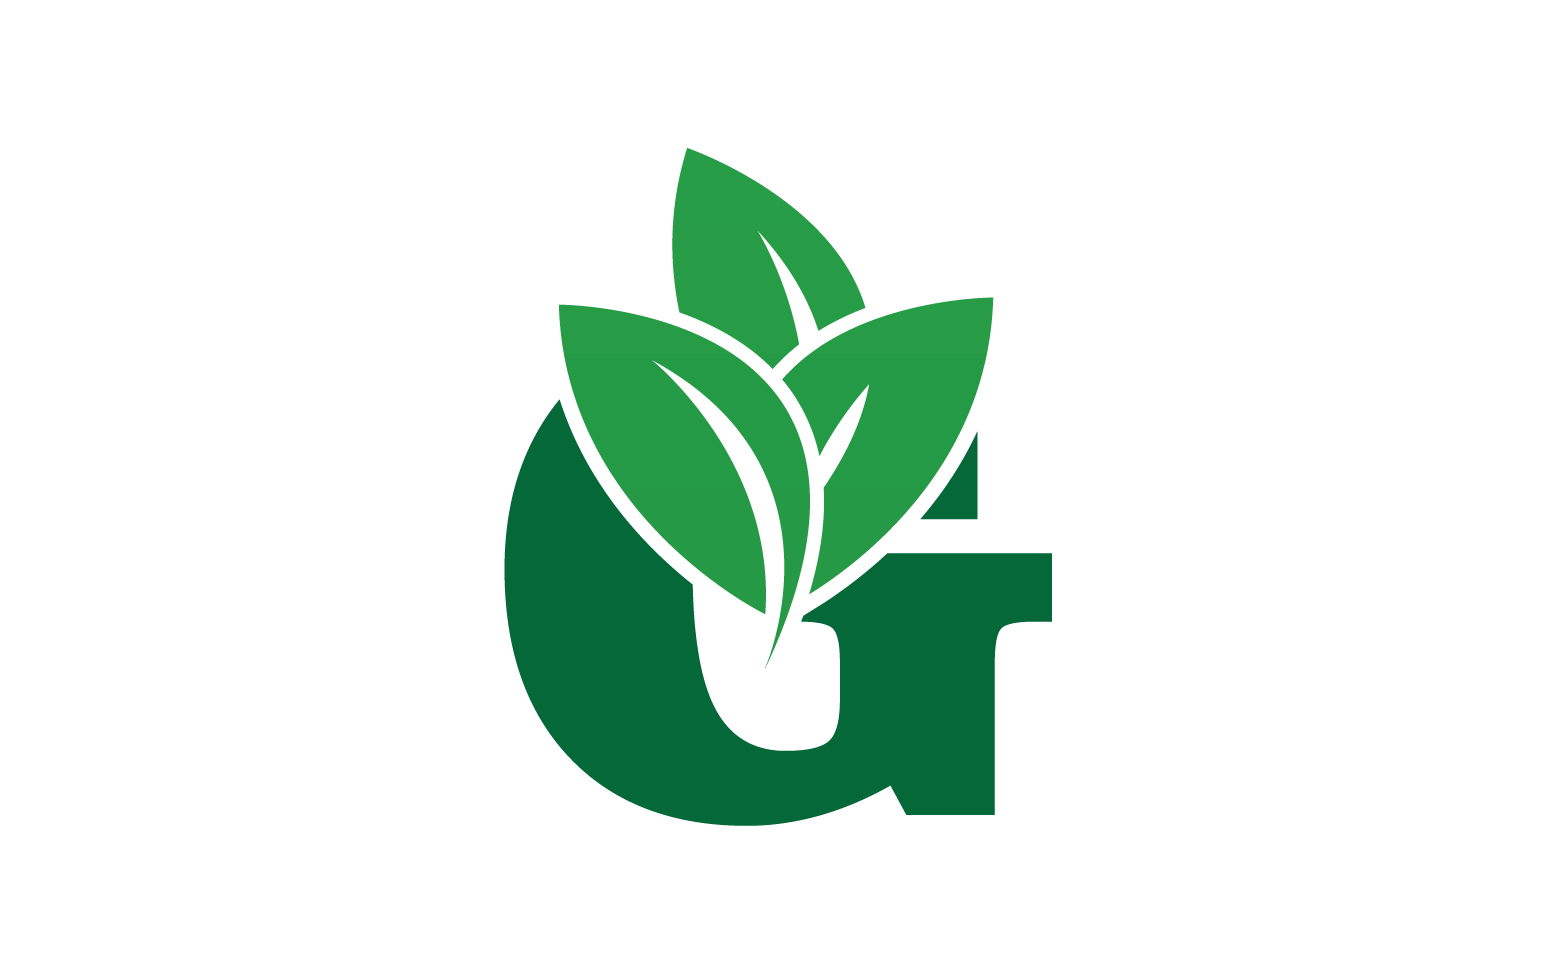 G letter leaf green logo icon version v53